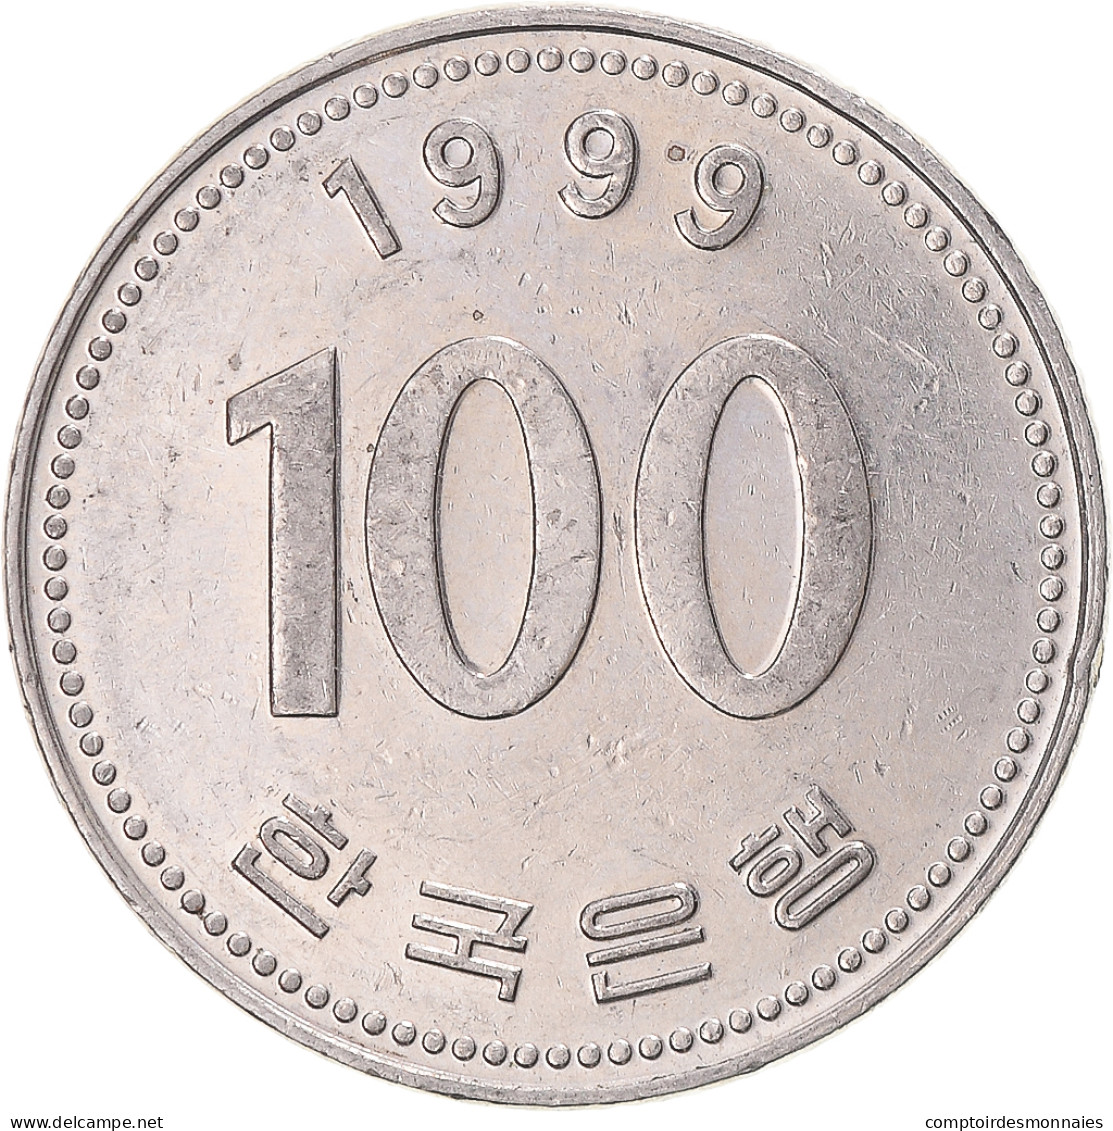 Monnaie, Corée, 100 Won, 1999 - Coreal Del Sur